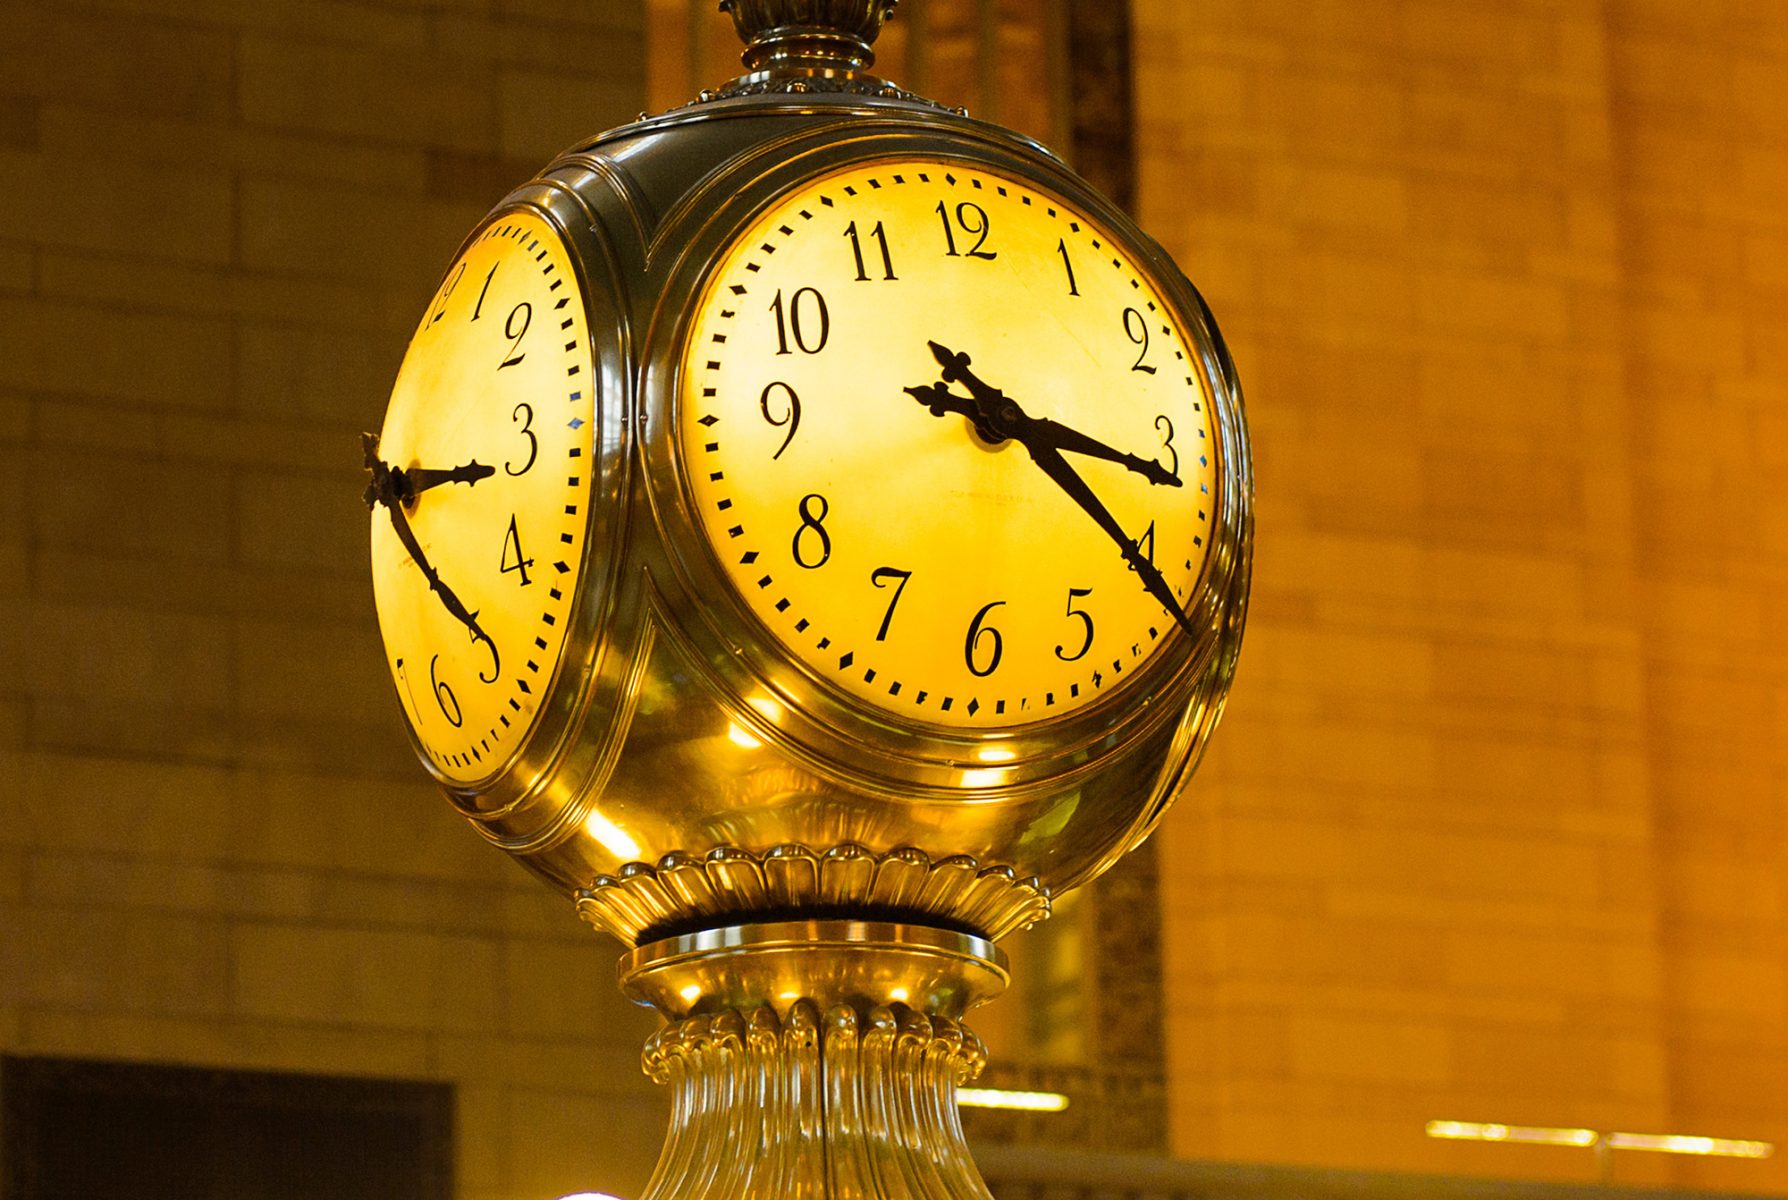 grand central station clock replica